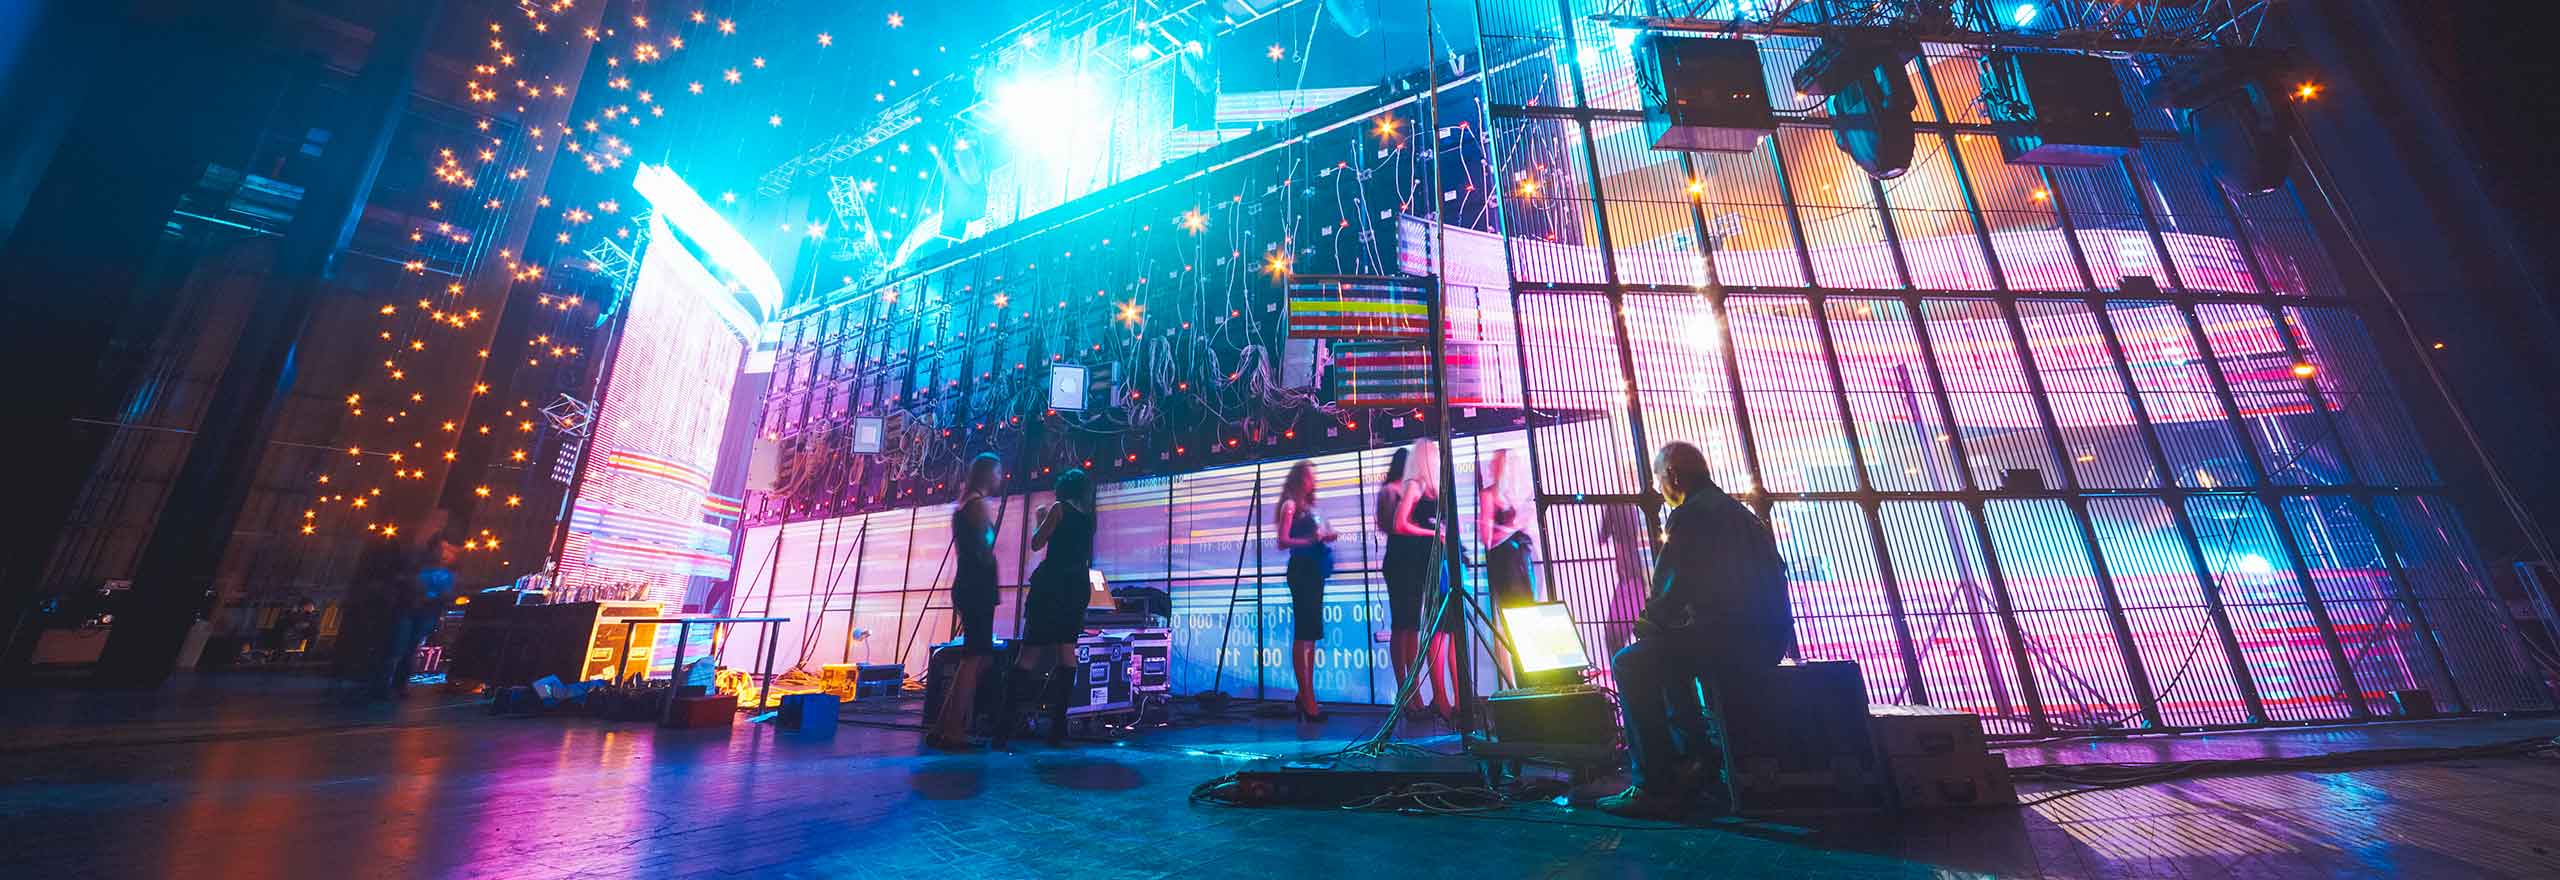 Imagen estilizada de una escena entre bambalinas en un evento de entretenimiento formal.